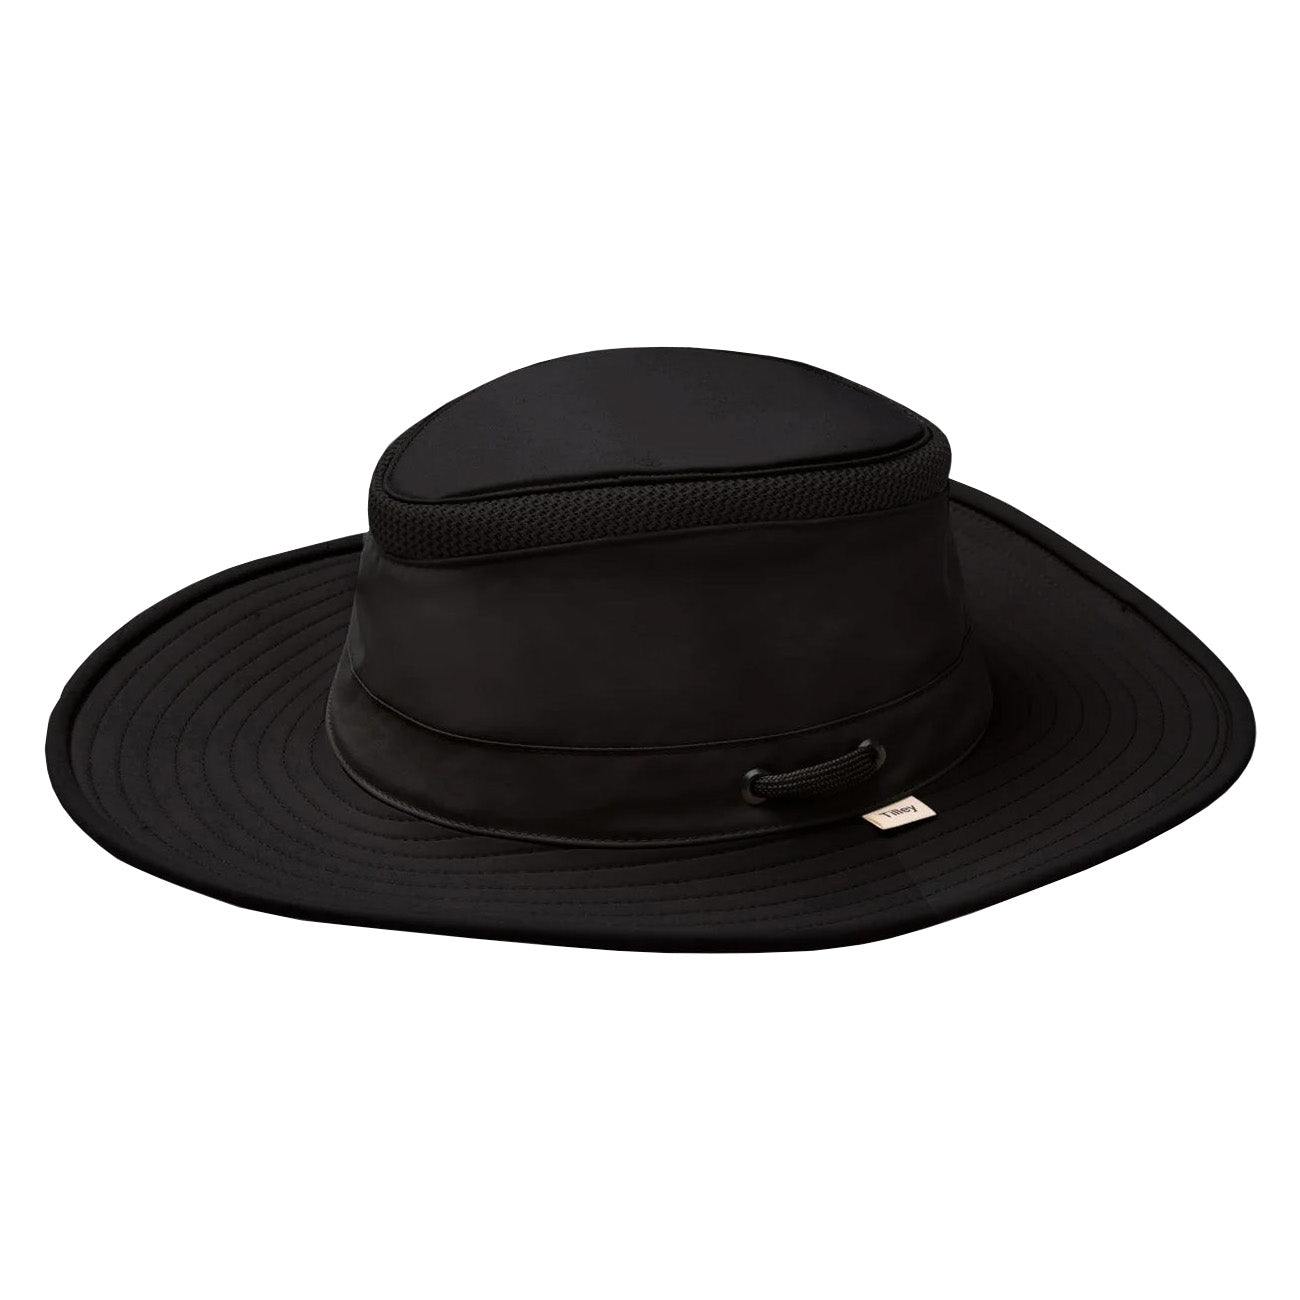 Tilley Airflow Broad Brim Hat in Black